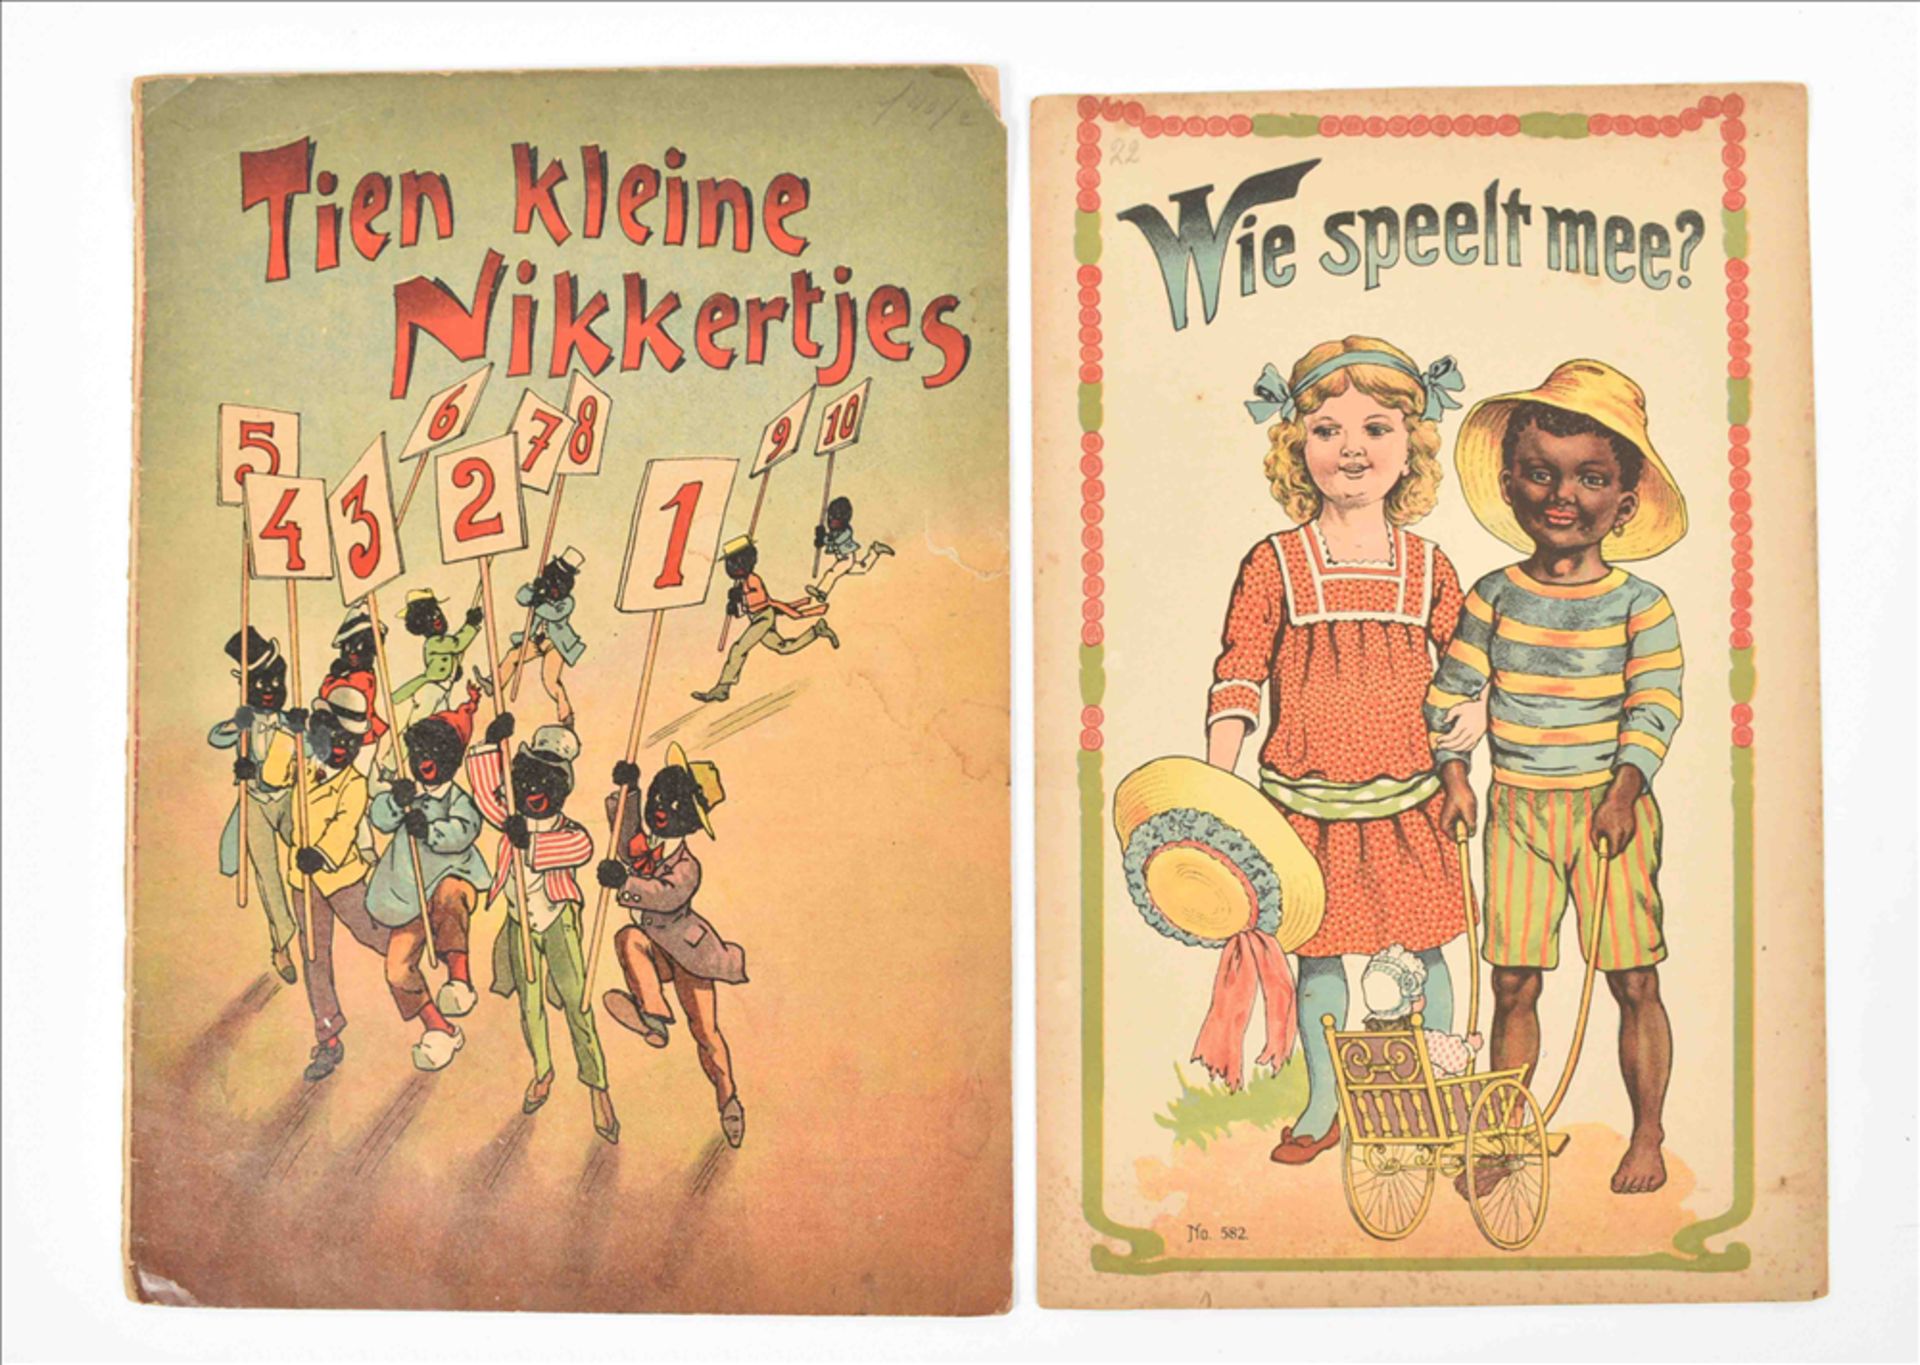 [Black interest] Fourteen late 19th century Dutch children's books: (1) Tien kleine nikkertjes - Image 6 of 16